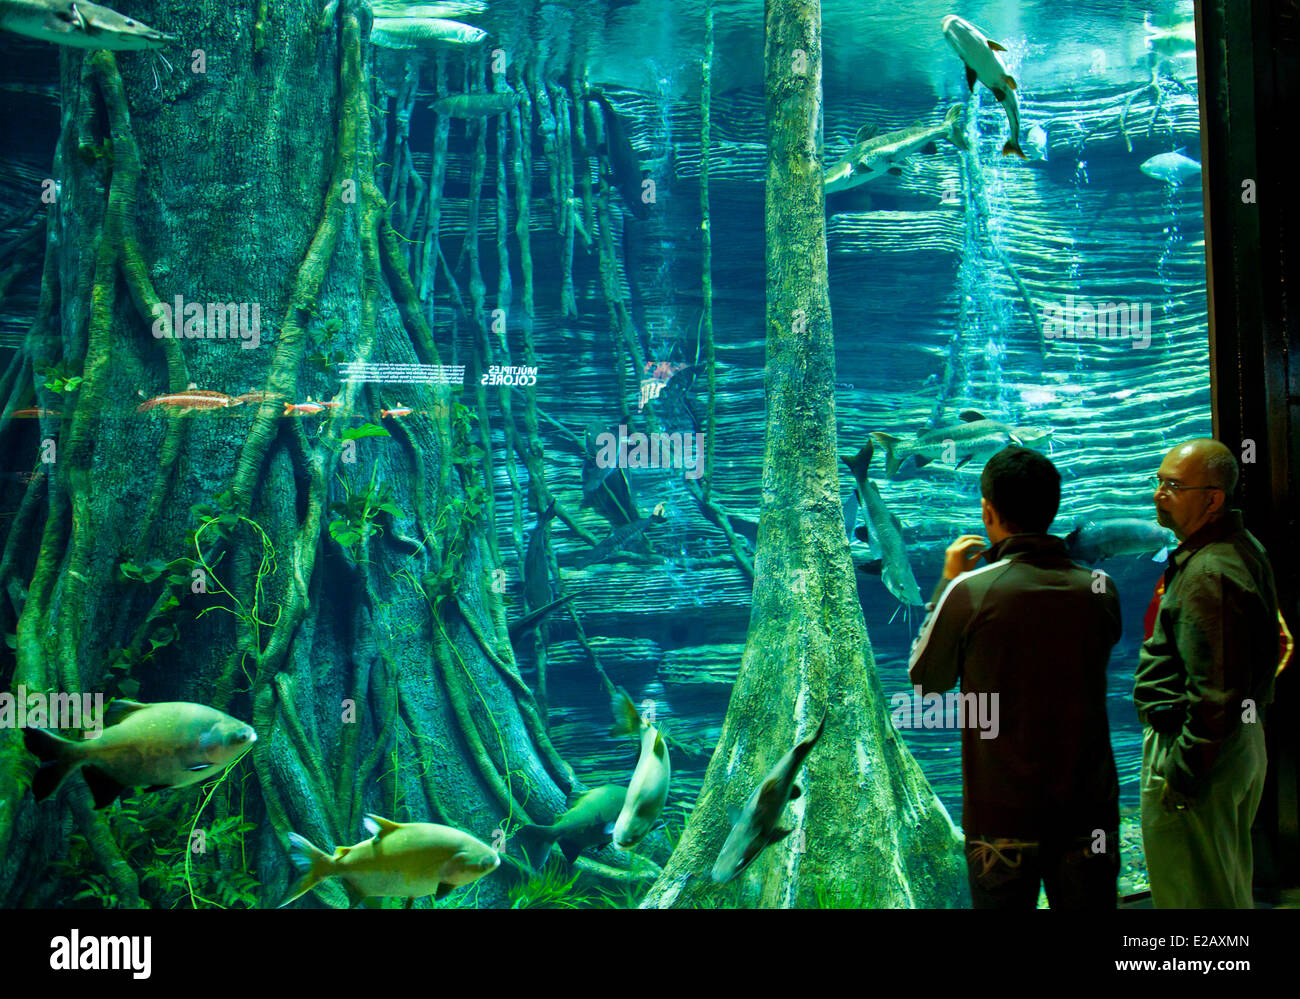 Colombia, Antioquia Department, Medellin, the giant Aquarium of Parque  Explora Stock Photo - Alamy